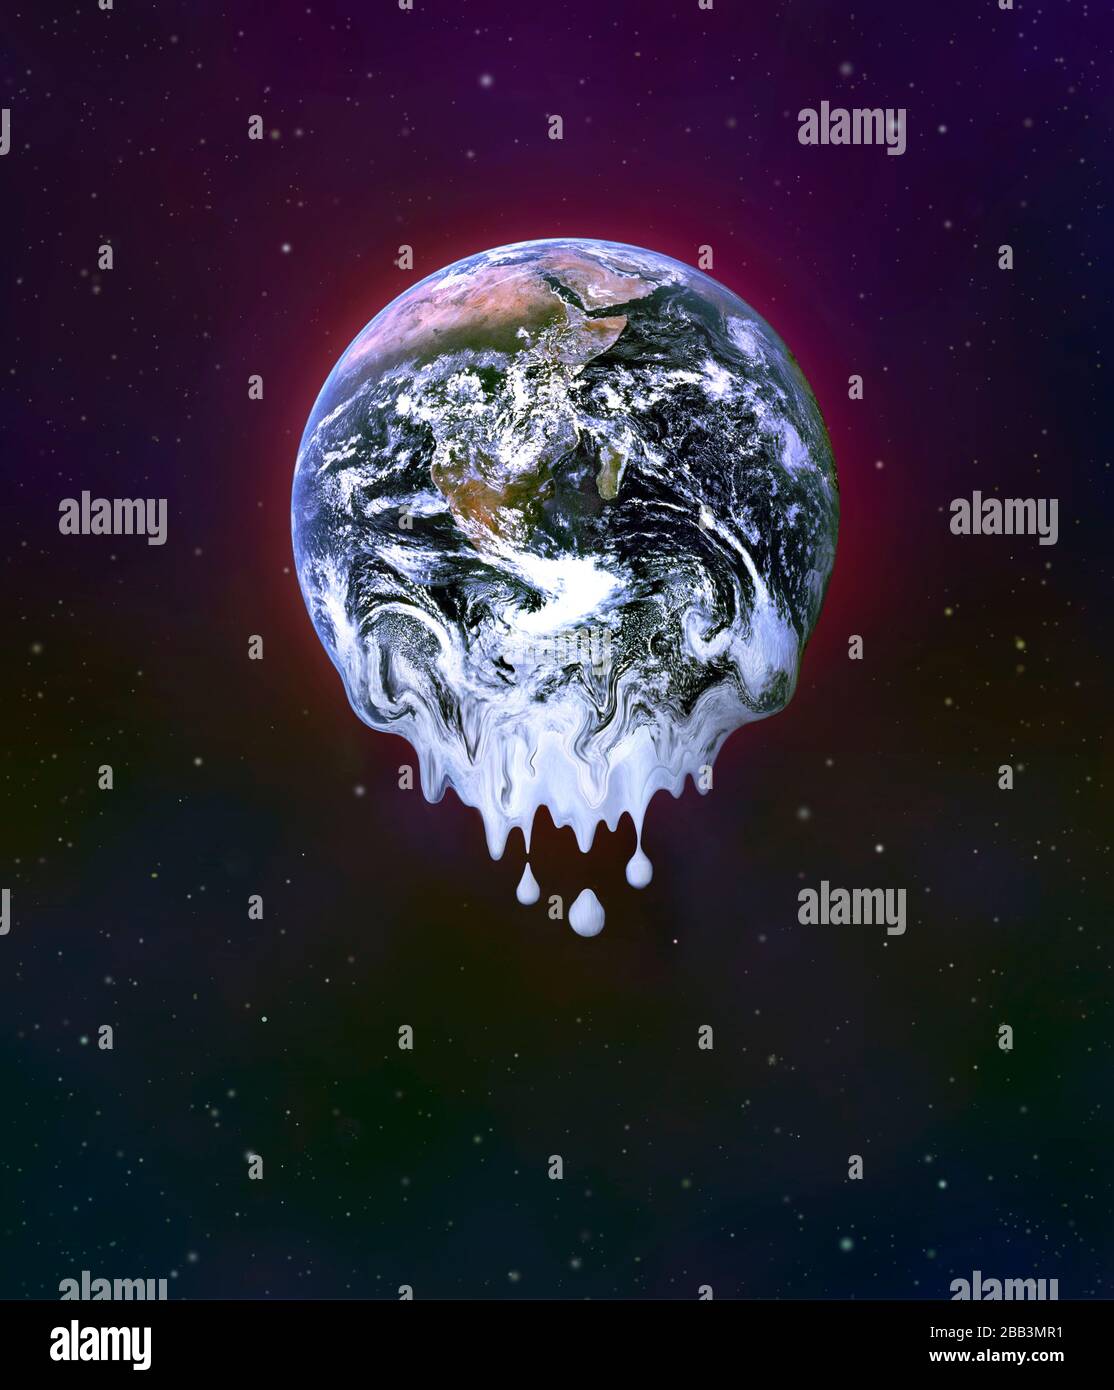 Riscaldamento globale come visto dallo spazio! Un'immagine digitale del pianeta Terra che si riscalda e la fusione del ghiaccio antartico. Foto Stock